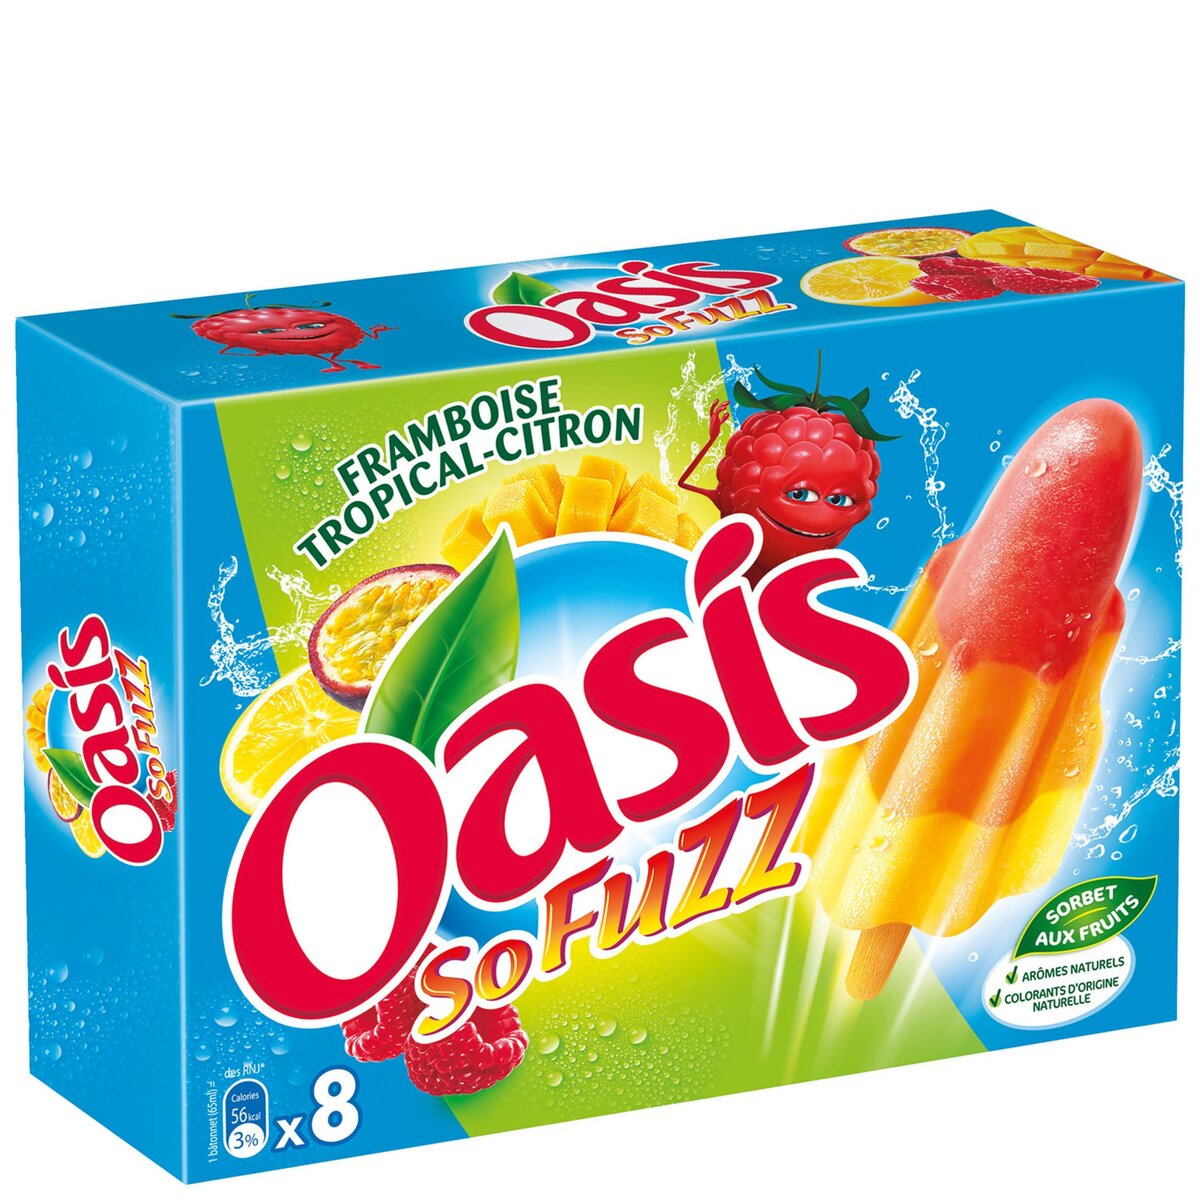 OASIS Oasis so fuzz x8 -478g